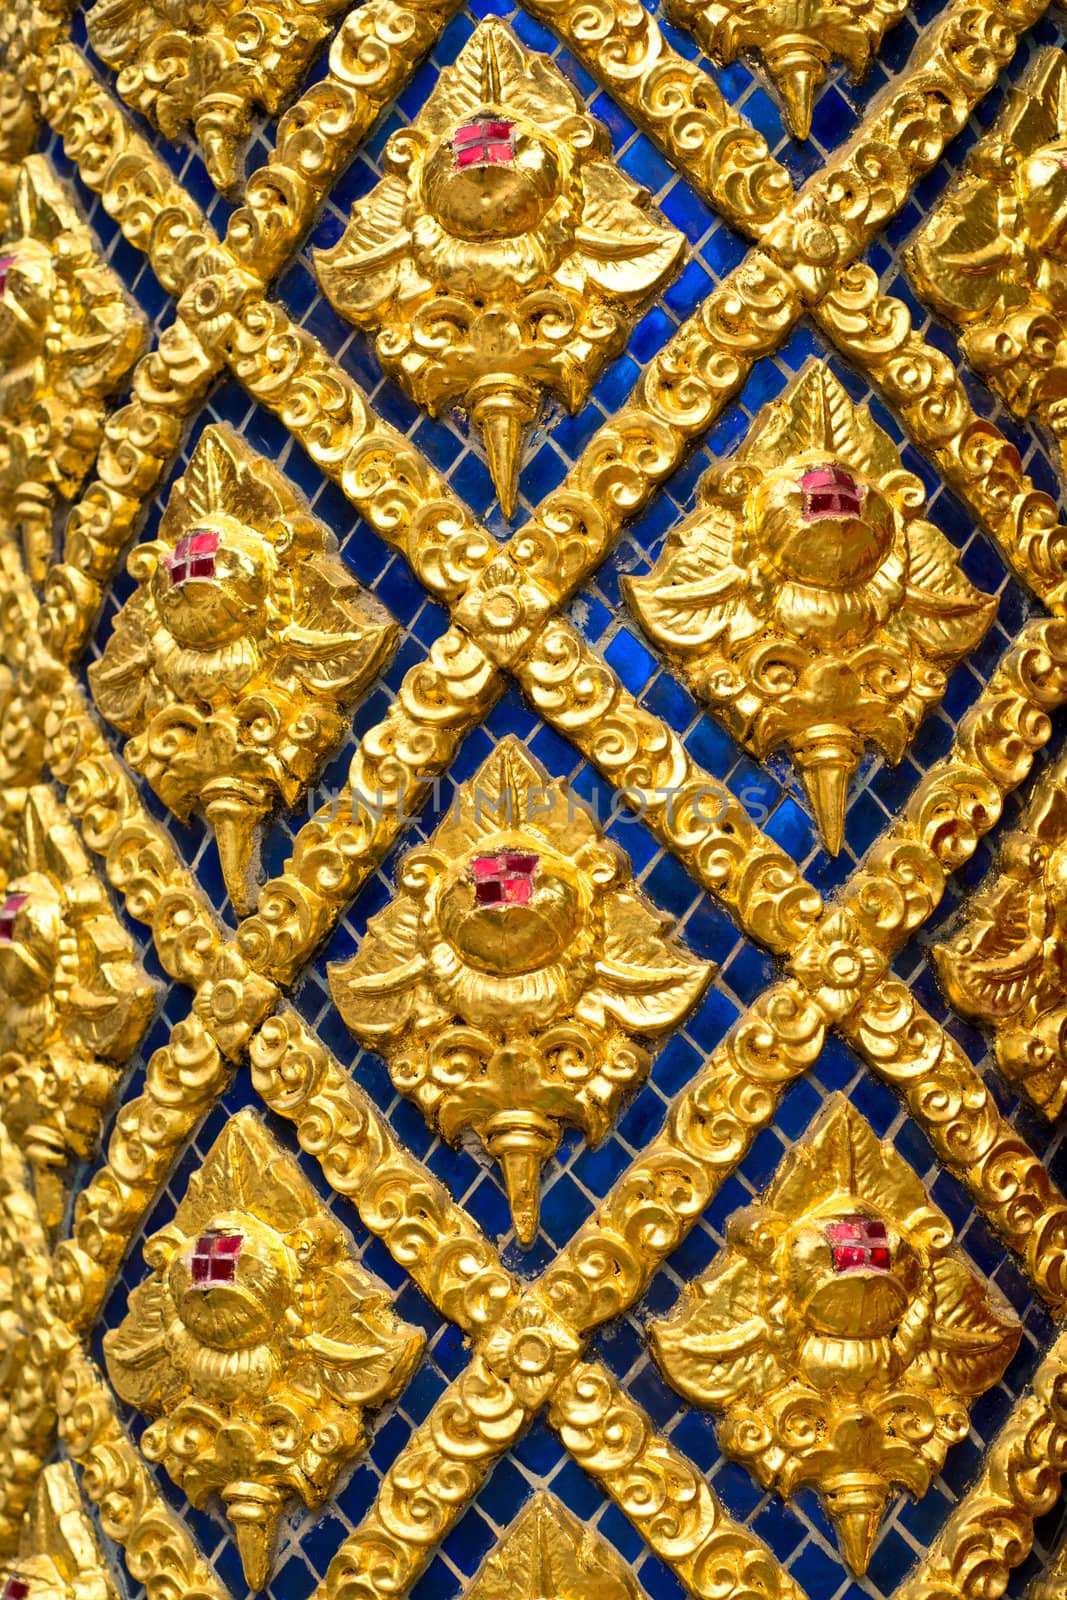 Oriental pattern - golden flowers in blue mosaic